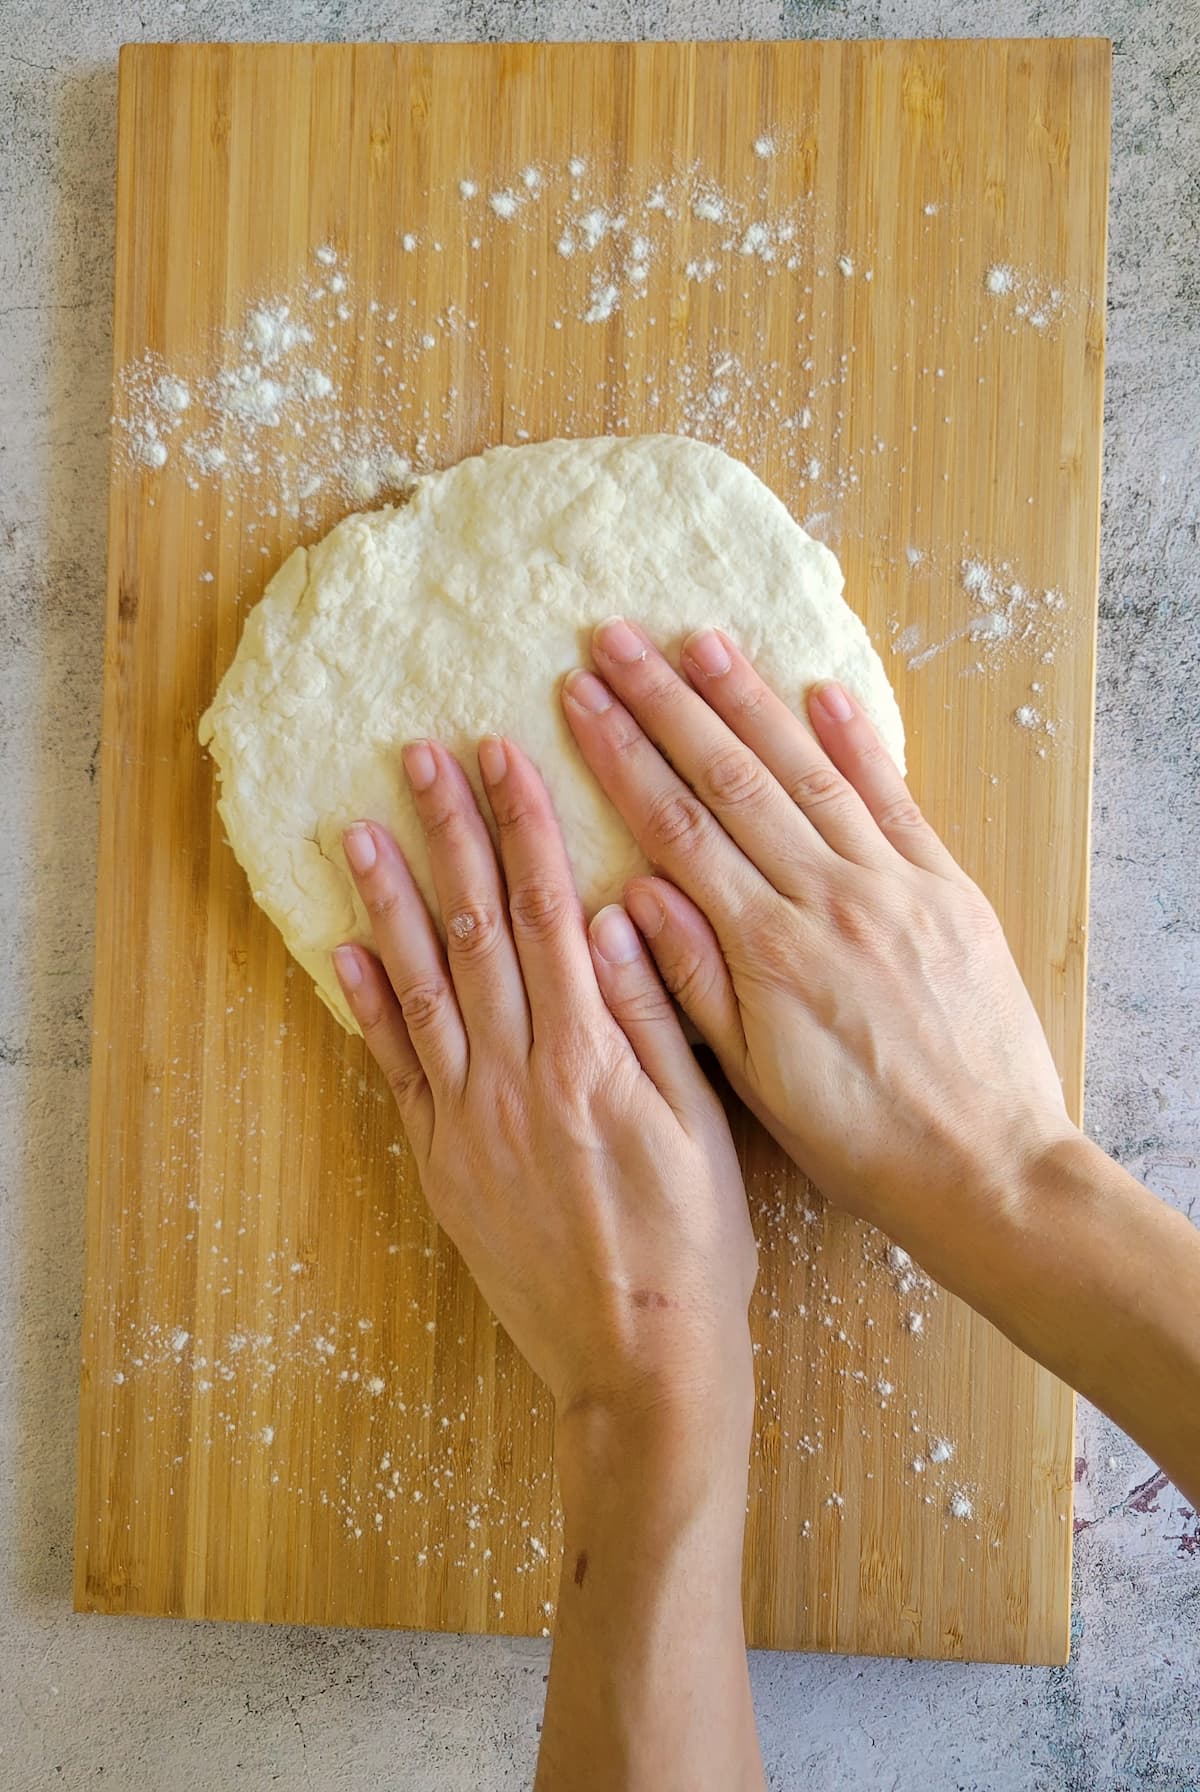 hands flattening a circular piece of dough on a cutting board